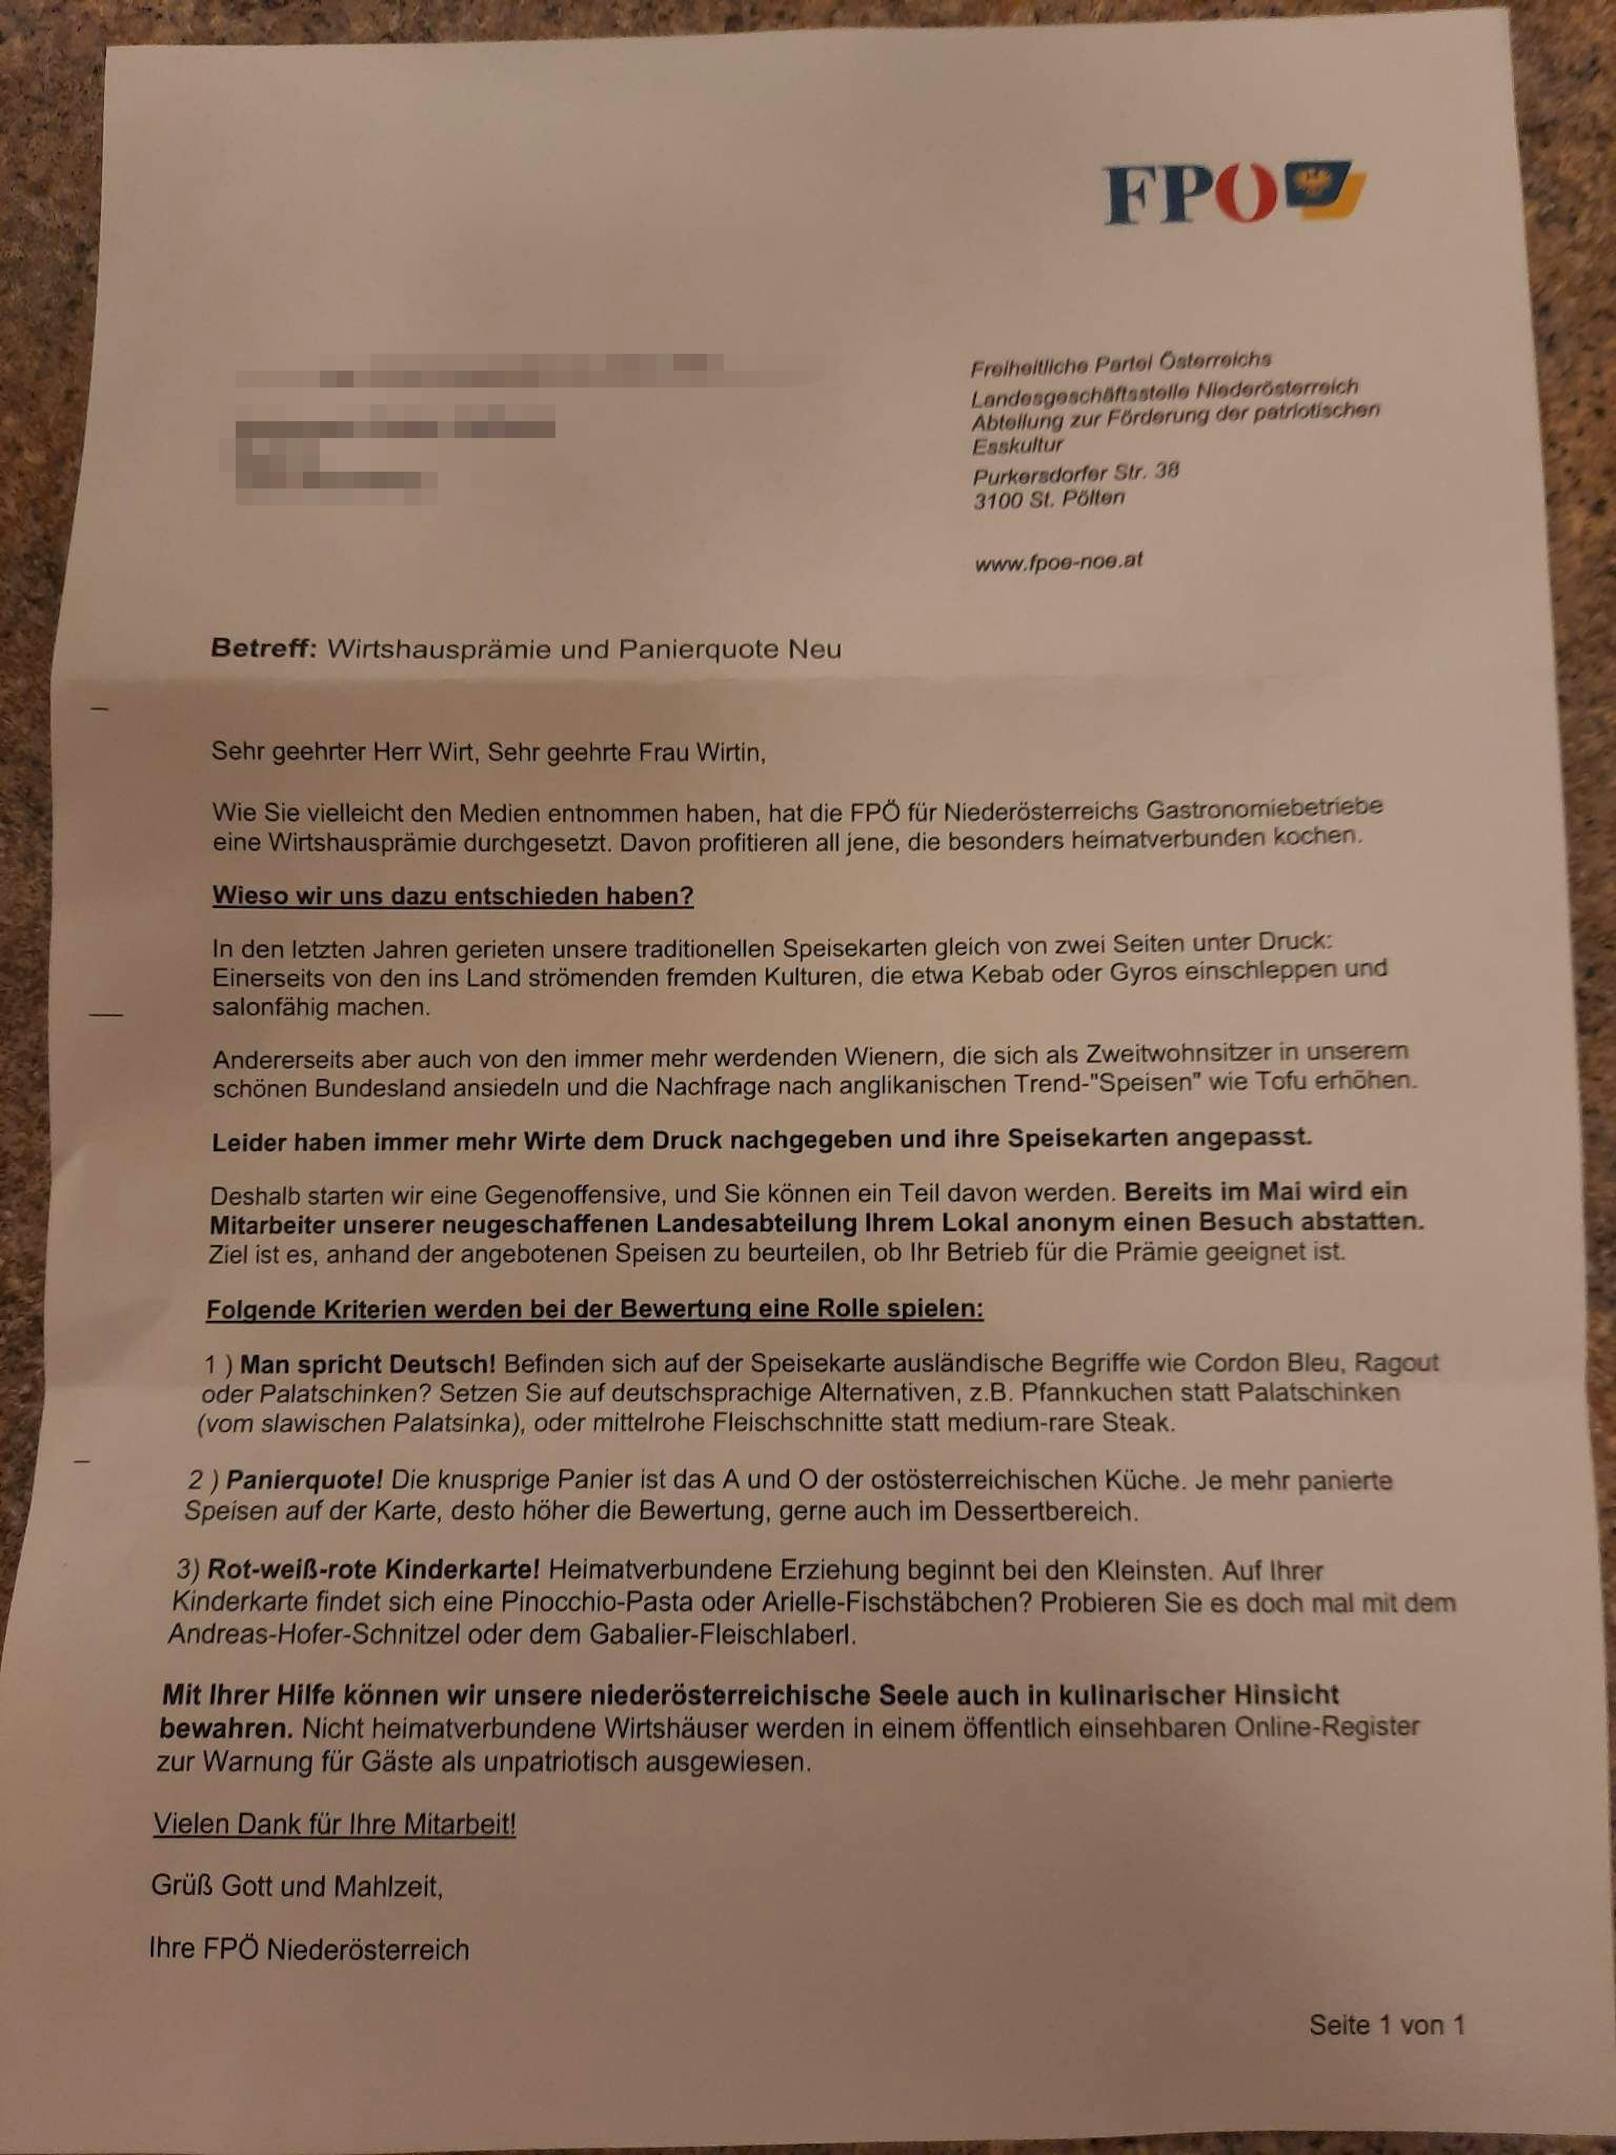 So sieht der FPÖ-Fake-Brief aus